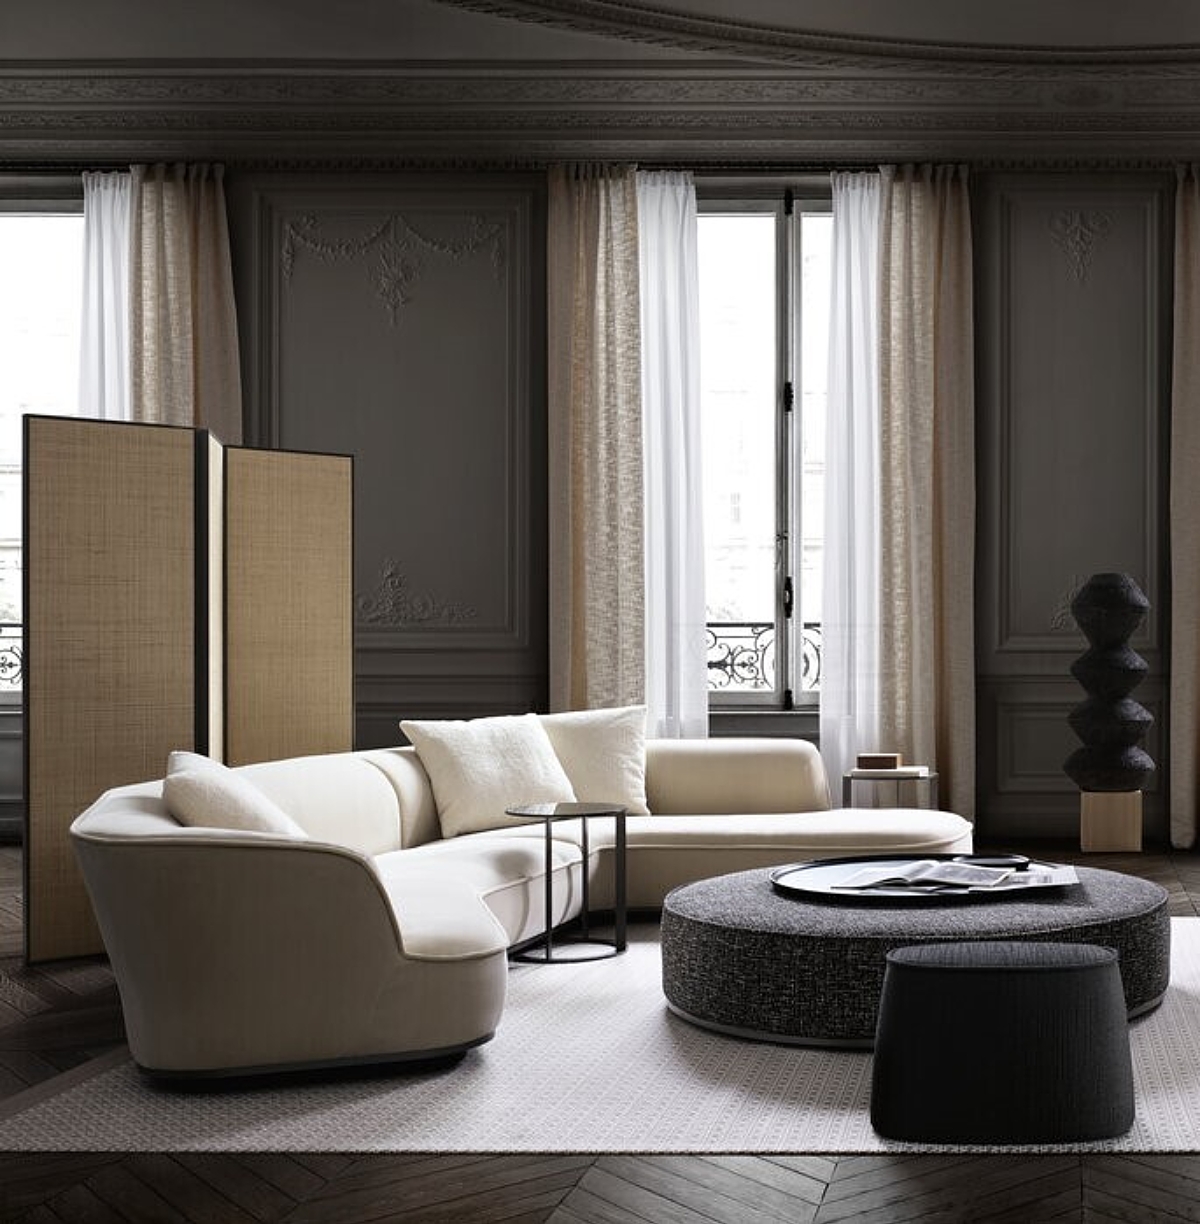 De Maxalto Lilum sofa is een organisch gevormde sofa die past in een formele of informele setting